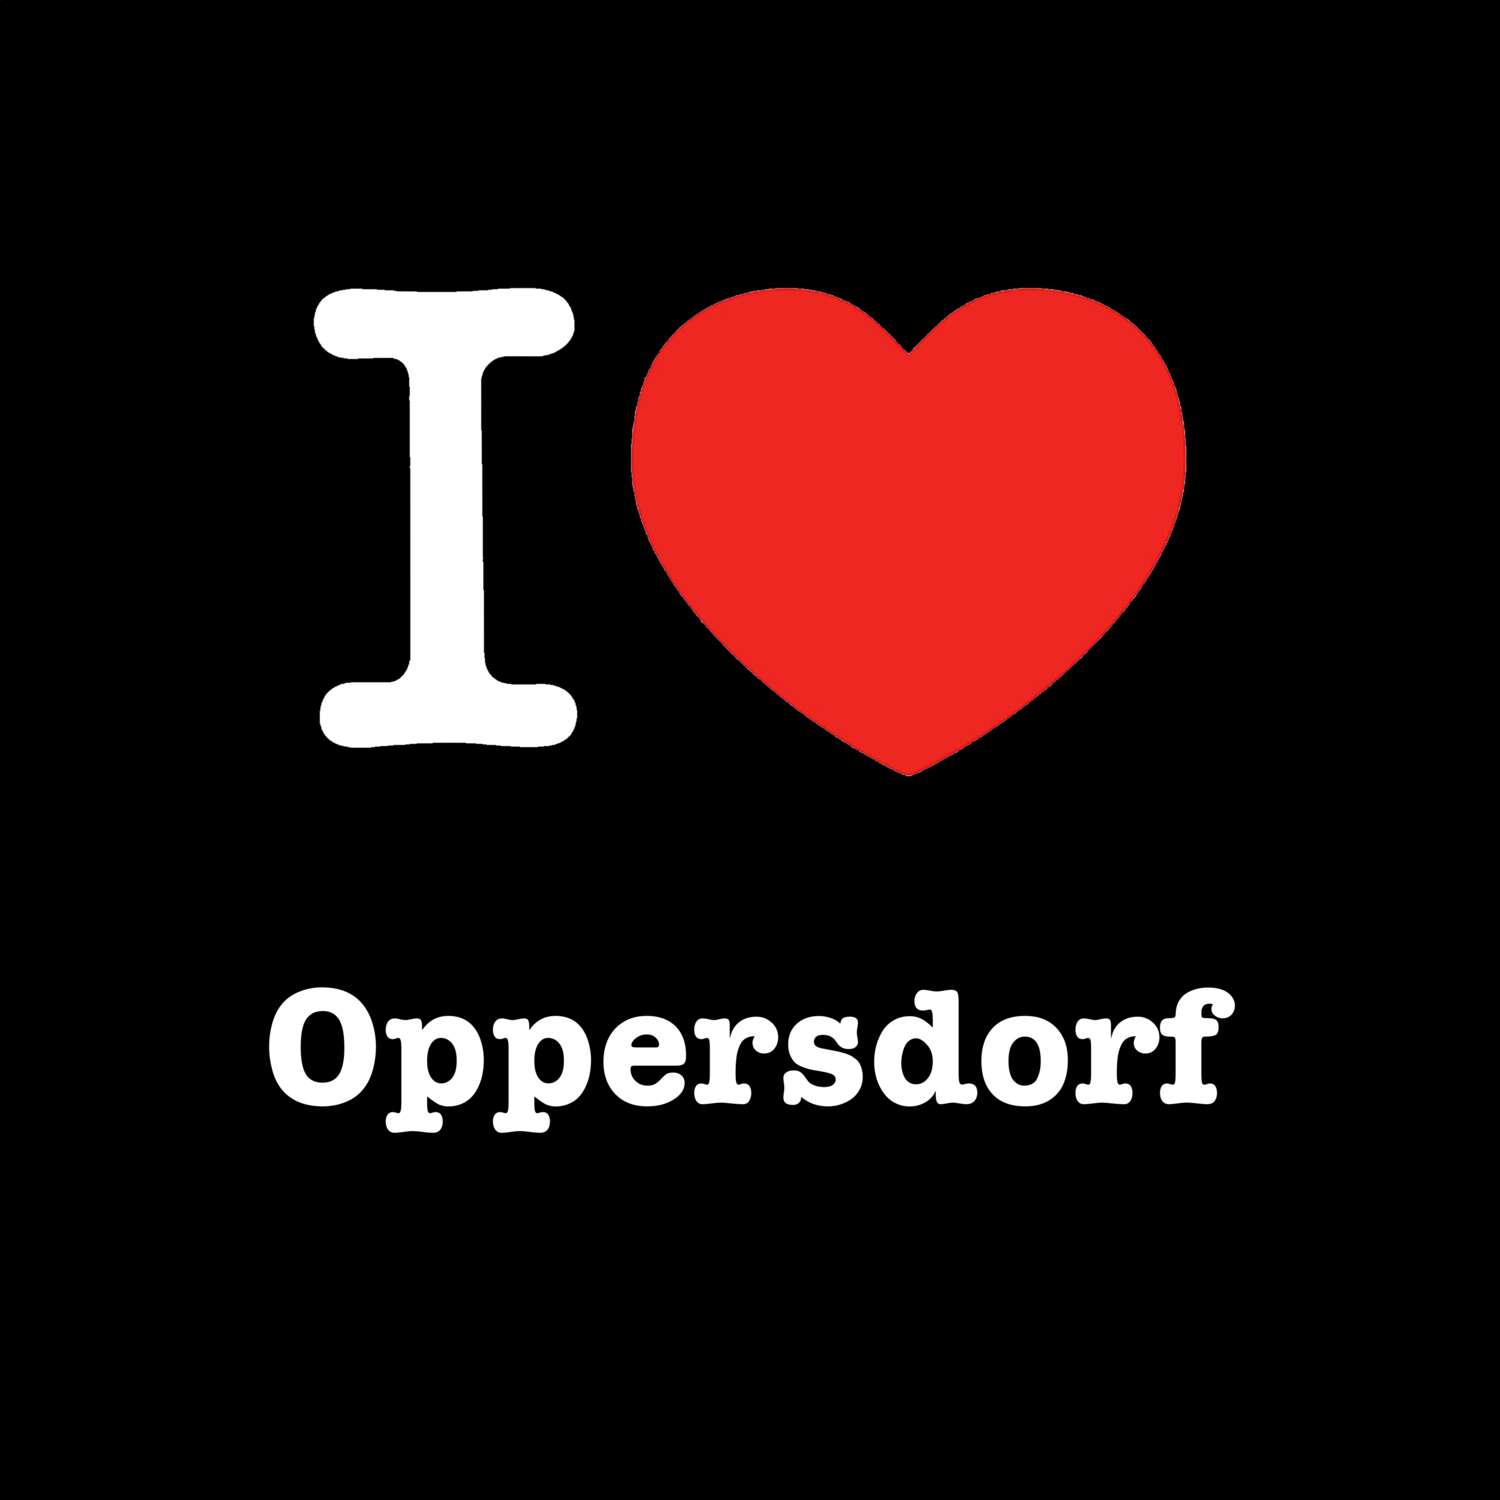 Oppersdorf T-Shirt »I love«